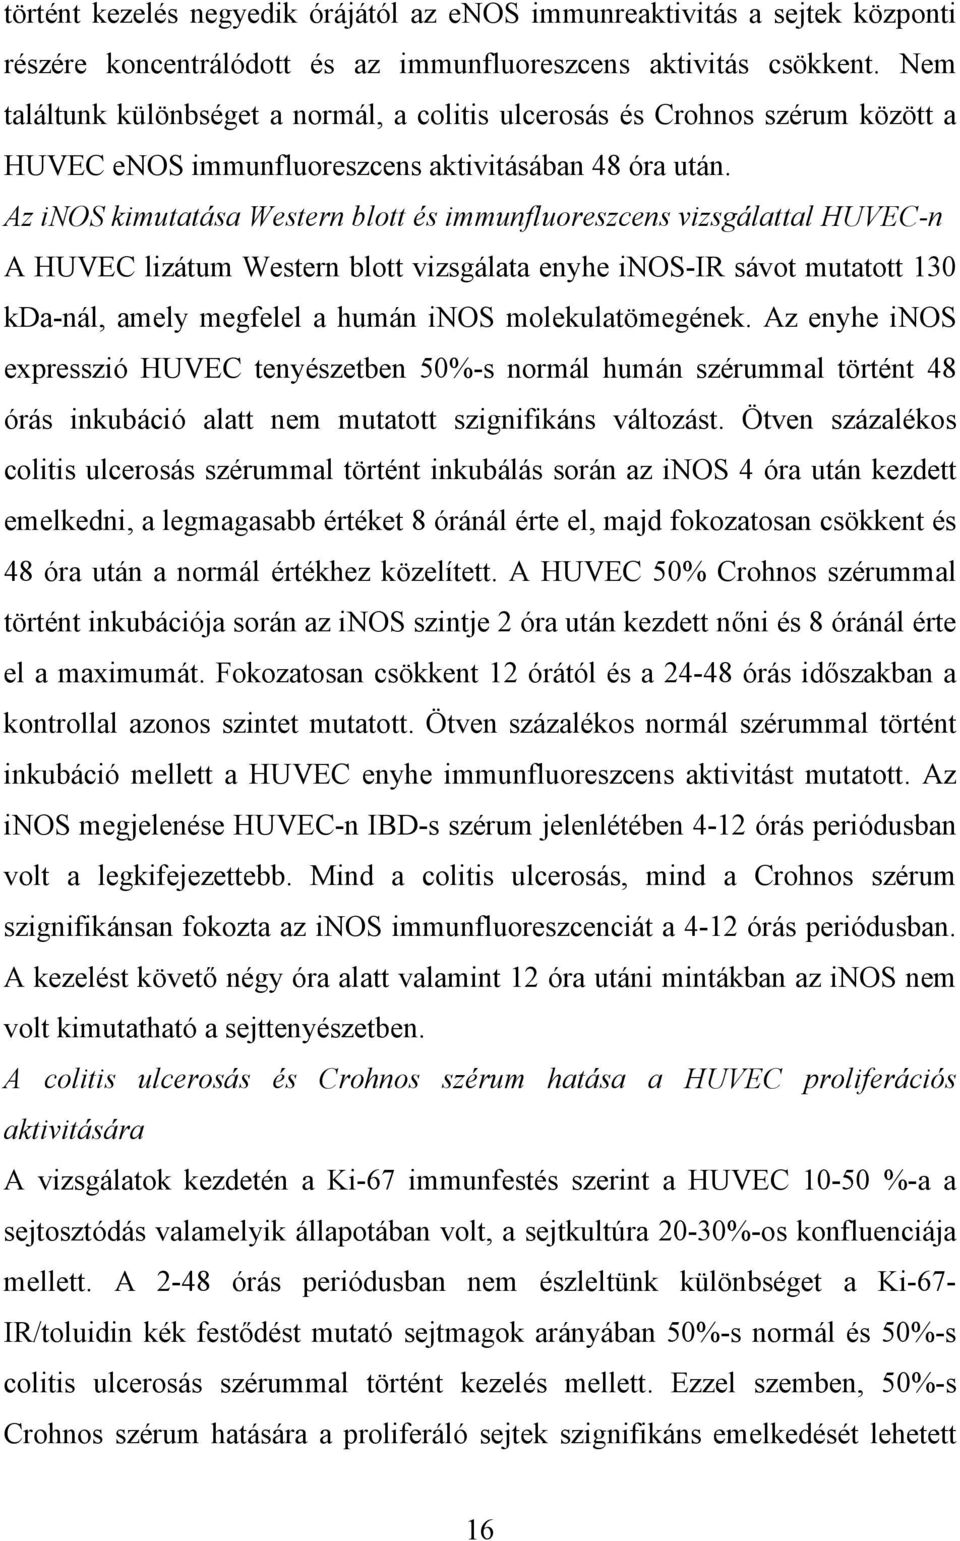 Az inos kimutatása Western blott és immunfluoreszcens vizsgálattal HUVEC-n A HUVEC lizátum Western blott vizsgálata enyhe inos-ir sávot mutatott 130 kda-nál, amely megfelel a humán inos